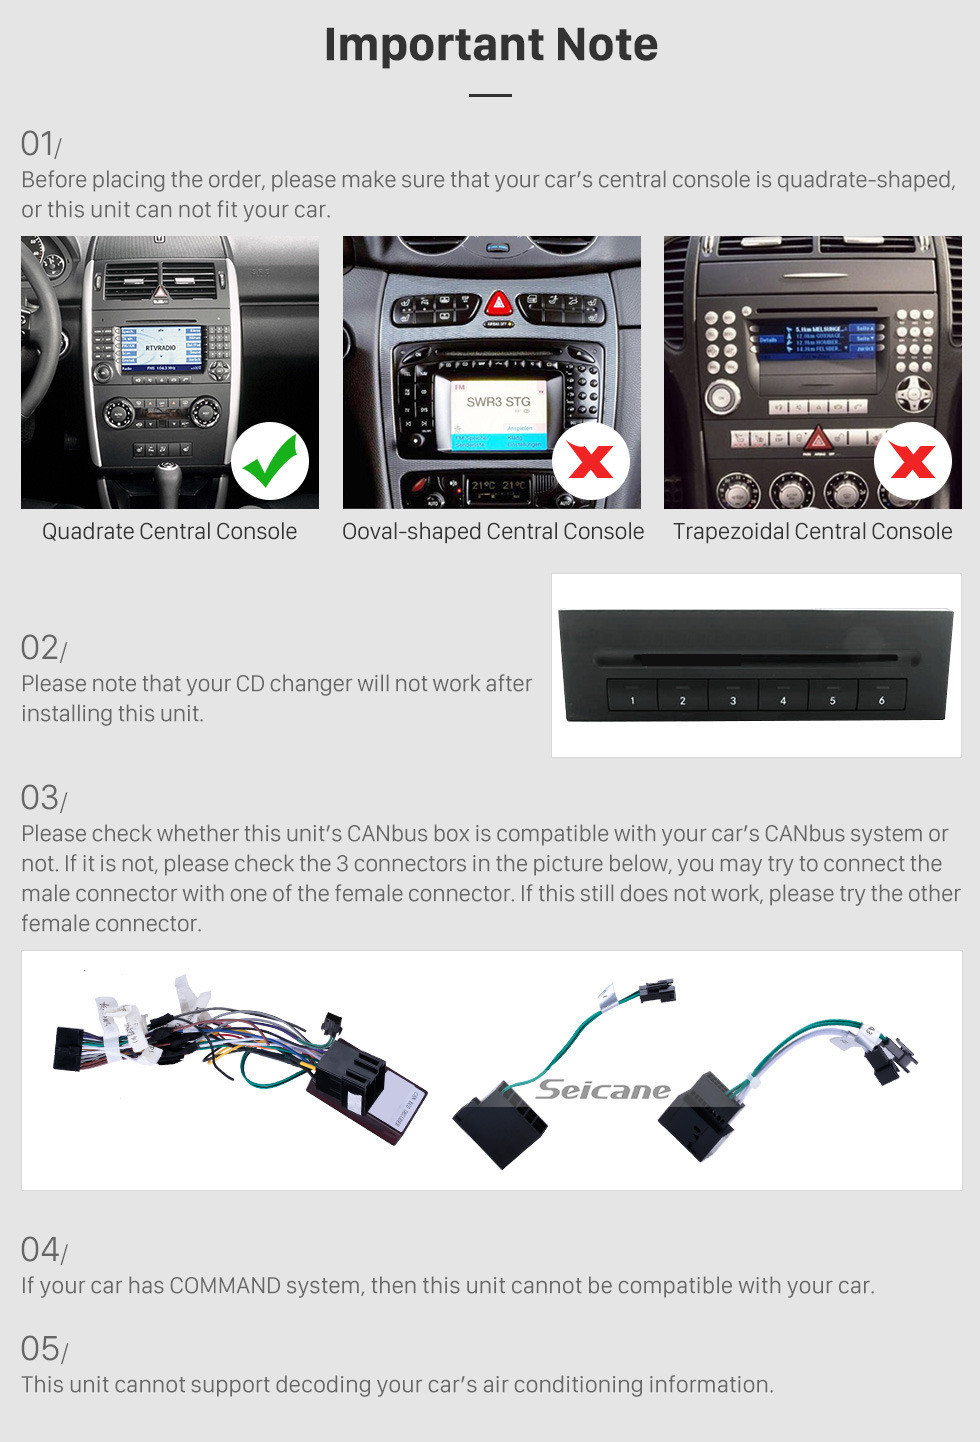 Seicane 9 pouces Android 12.0 Aftermarket Radio pour 2000-2015 VW Volkswagen Crafter pour lecteur DVD Bluetooth musique GPS système de navigation autoradio WiFi Mirror Link HD 1080P Vidéo